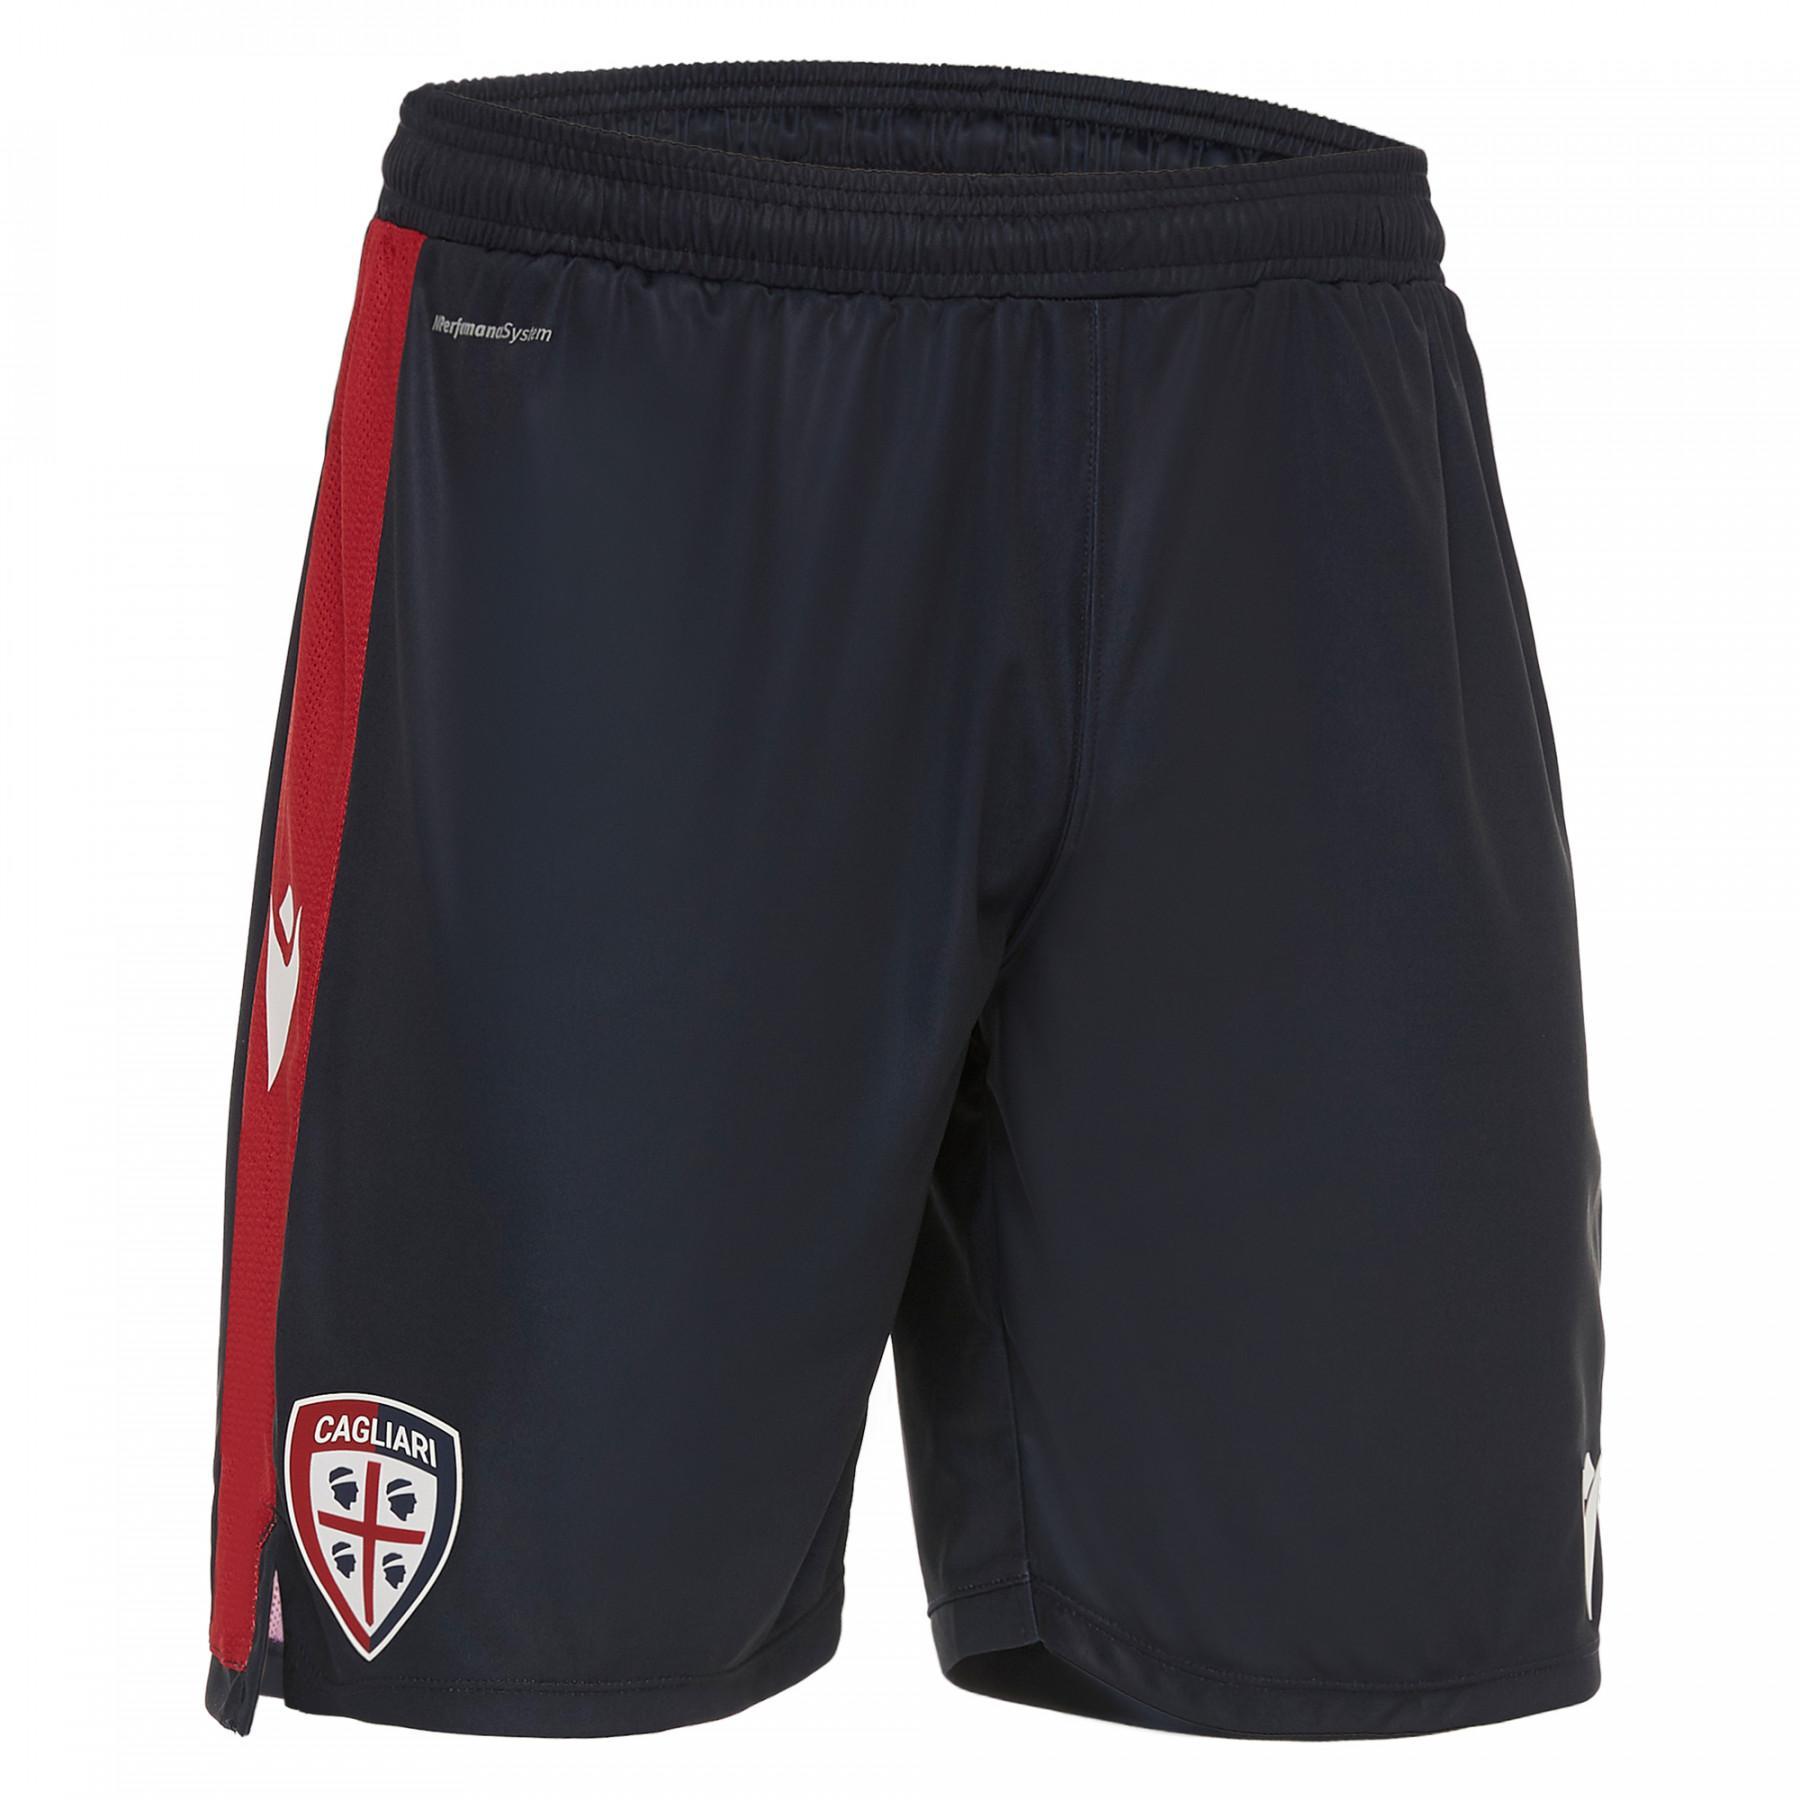 Pantalones cortos para el hogar Cagliari Calcio 19/20